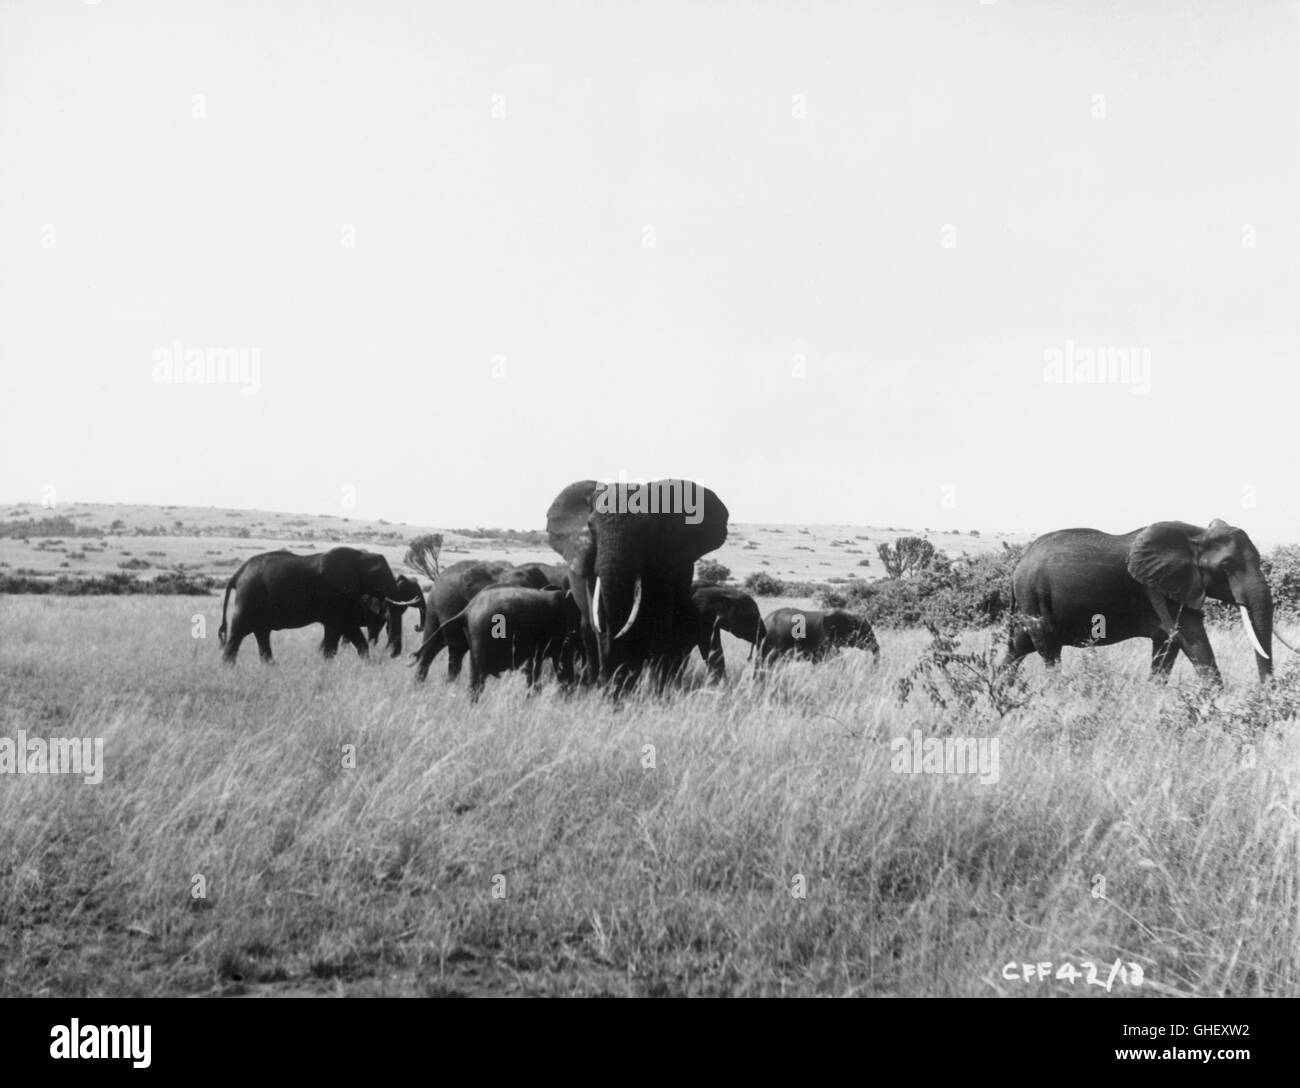 TOTO AND THE POACHERS UK 1958 Brian Salt Herd of elephants in Africa. Regie: Brian Salt Stock Photo